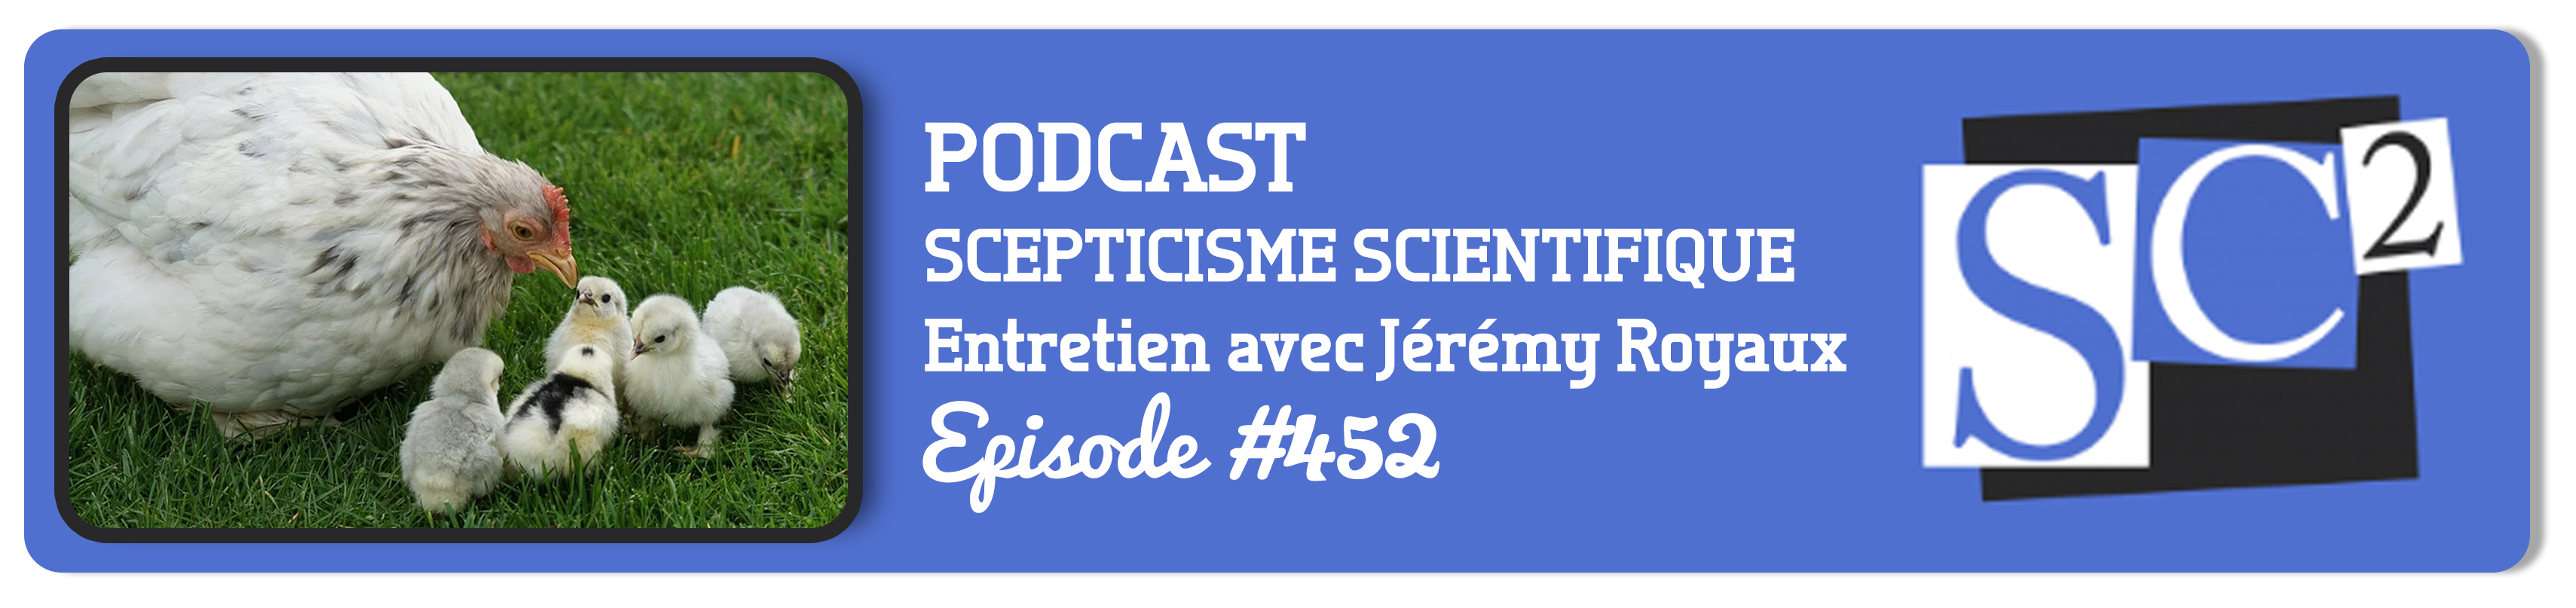 image_podcast_scepticisme_scientifique_florence_dellerie